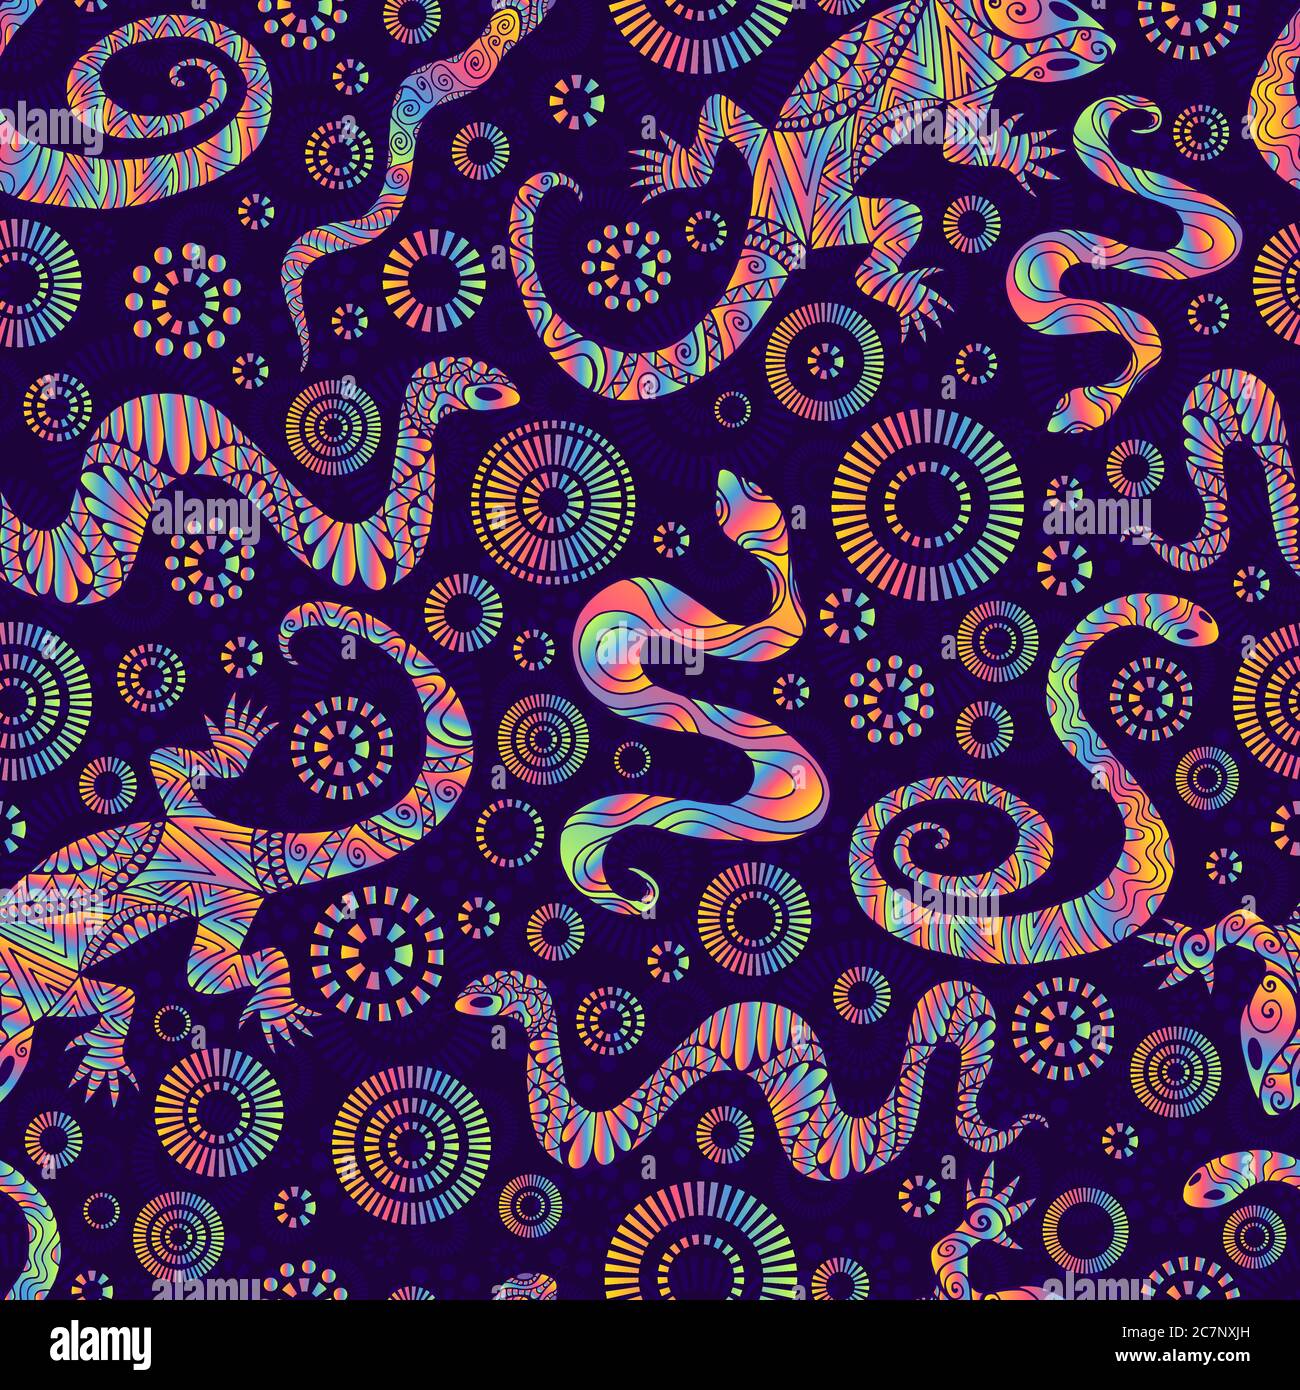 Helle Eidechsen und Schlangen nahtloses Muster, isoliert auf dunkelviolettem Hintergrund. Stock Vektor